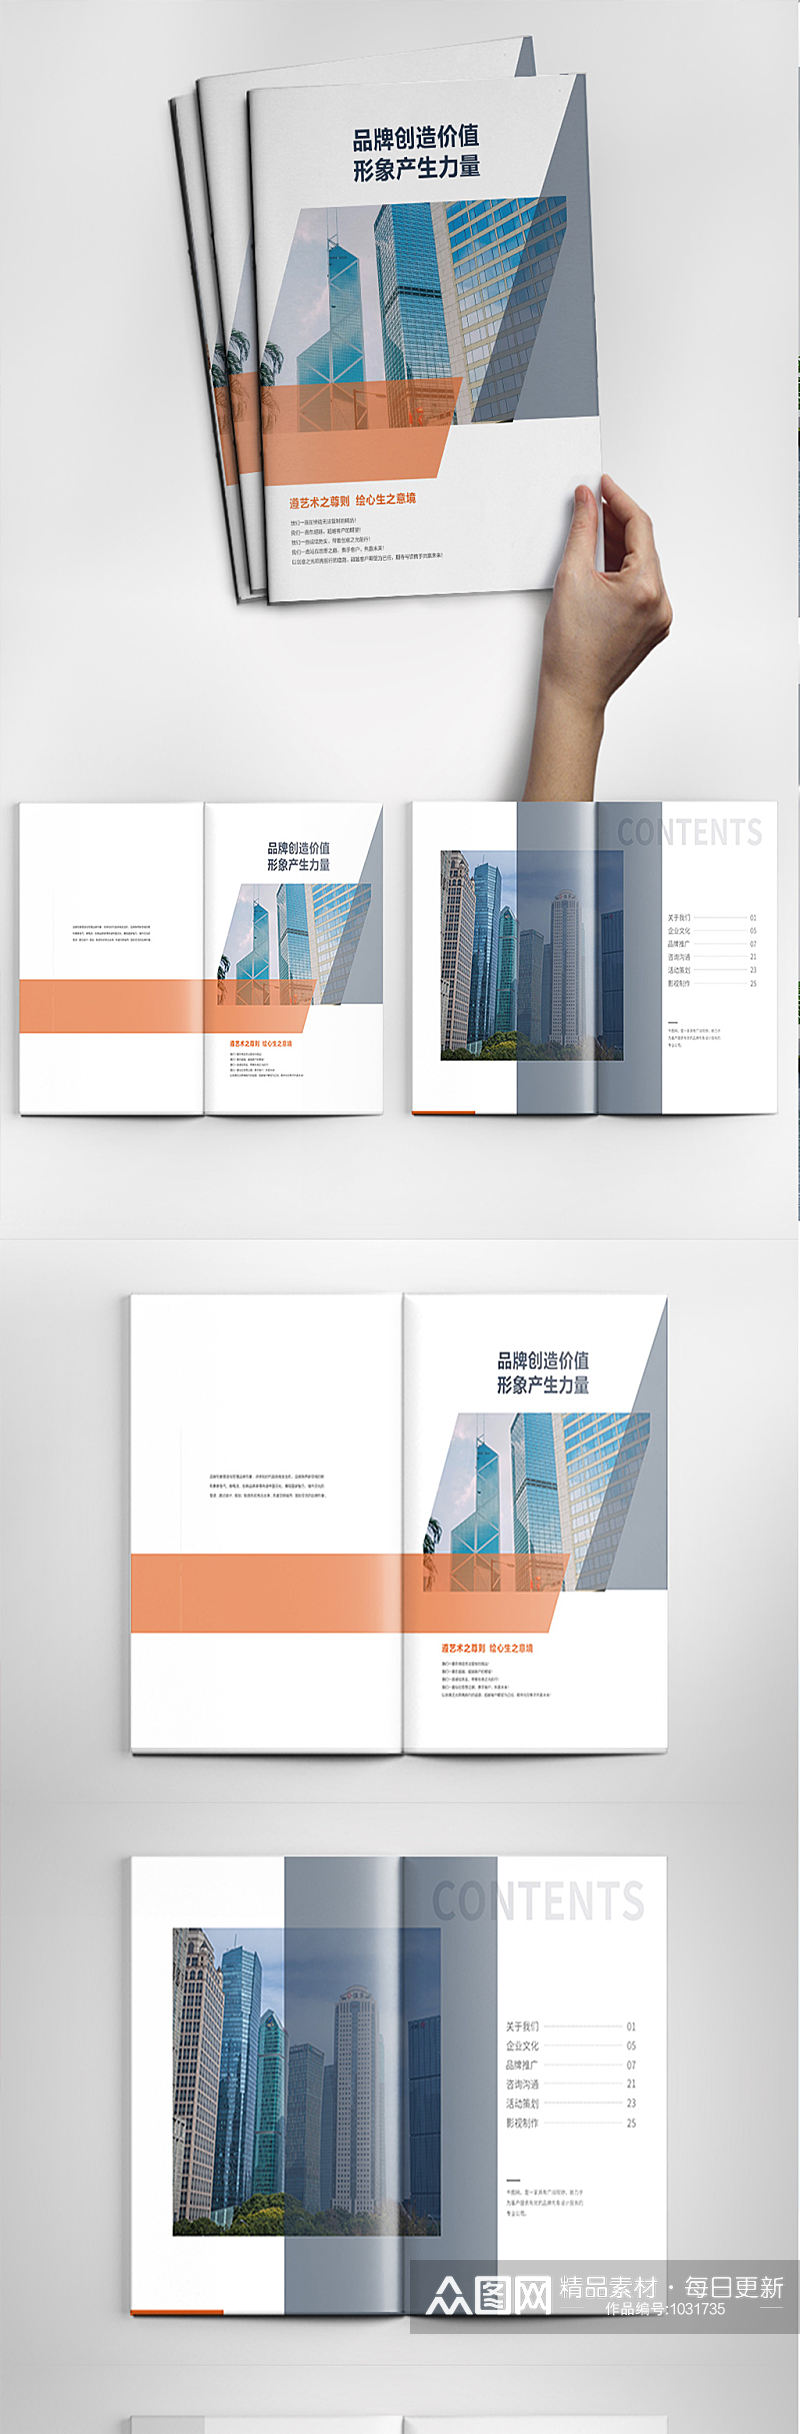 创意公司宣传商务企业画册设计素材